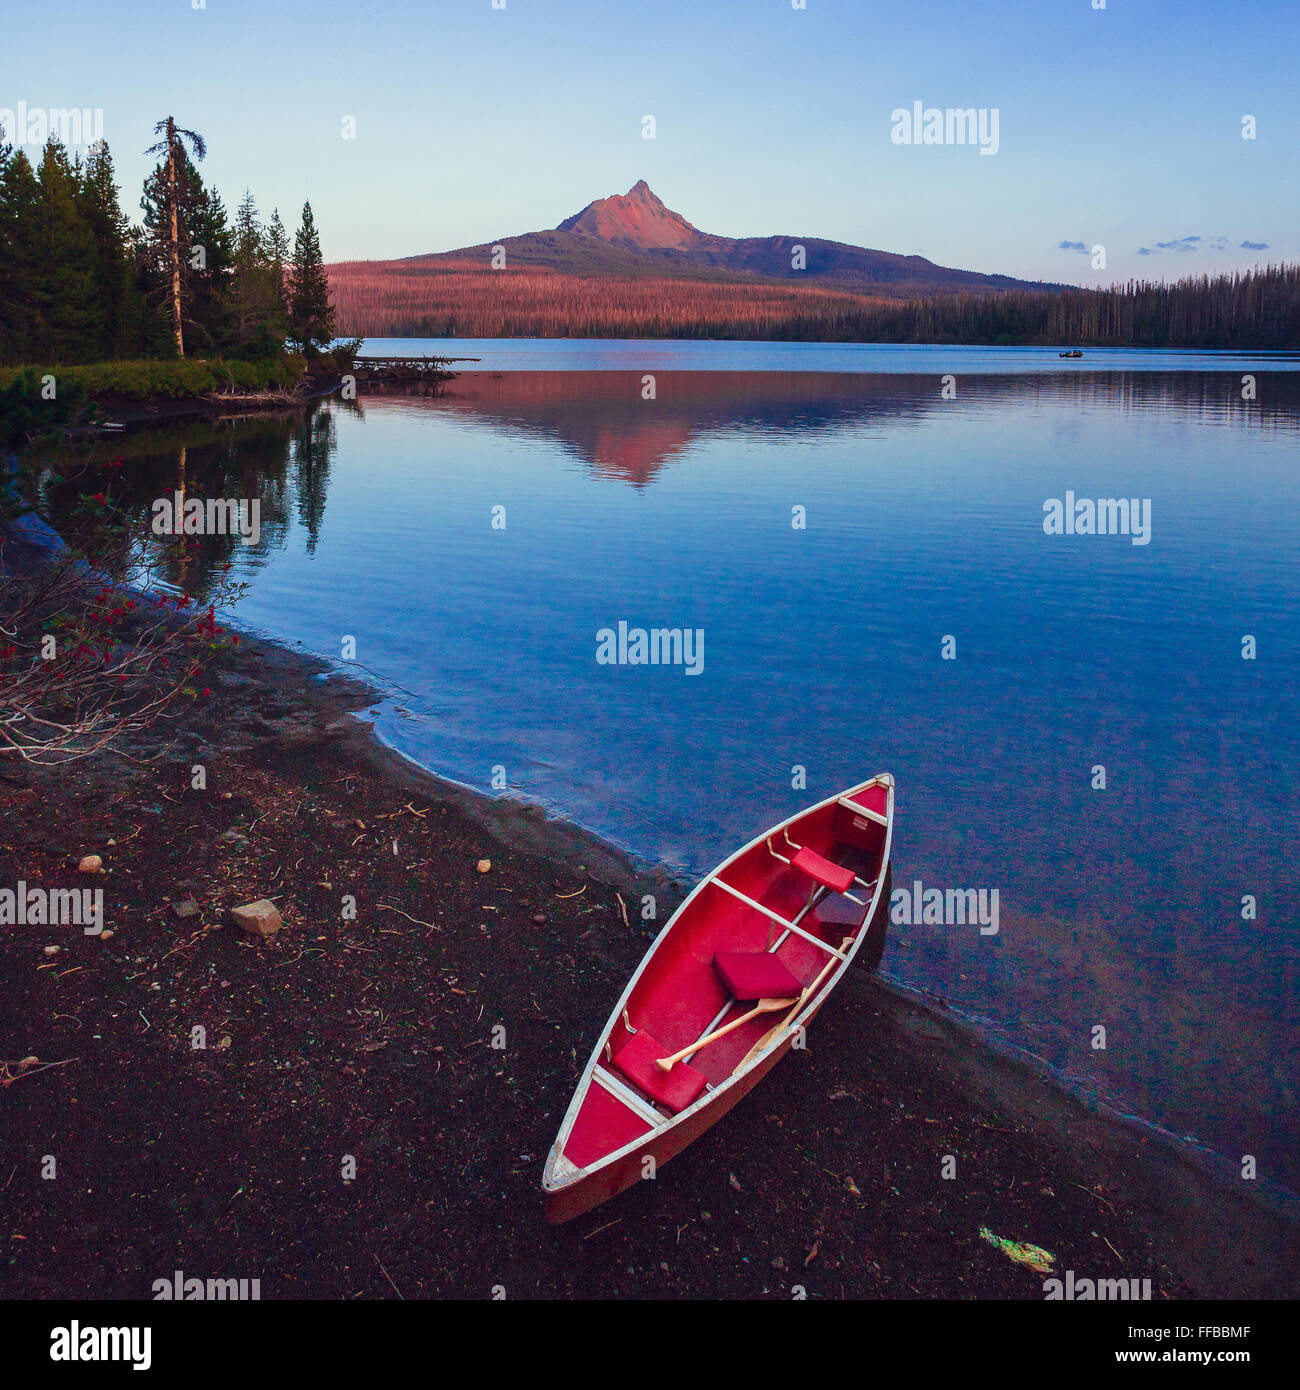 Grand lac avec un canoë sur la rive et Mt Washington dans l'arrière-plan de cette nature pittoresque. Banque D'Images